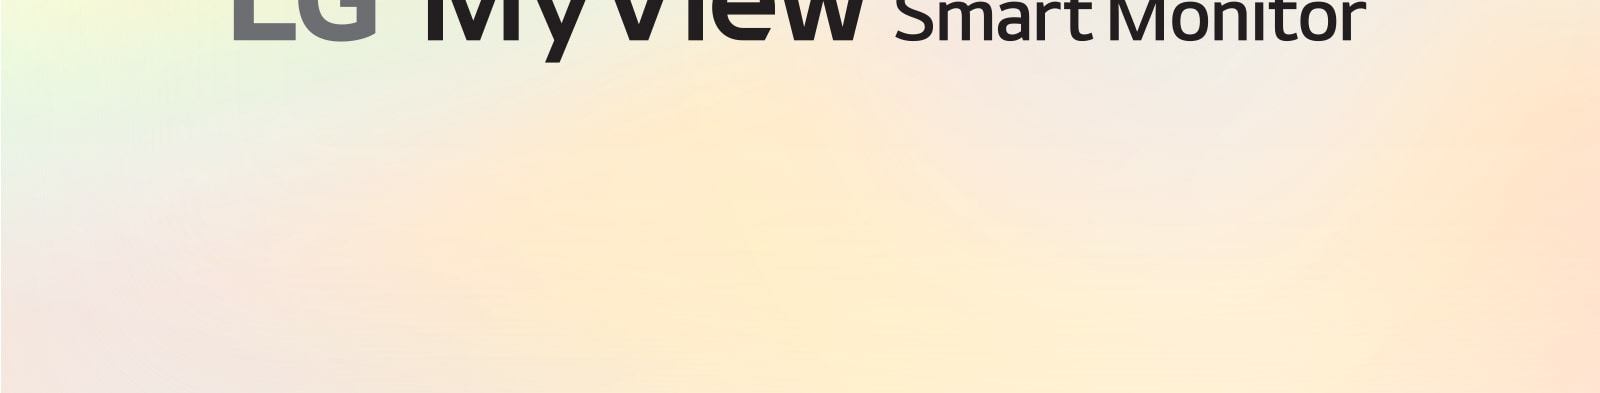 LG MyView Smart Monitor - в вашем собственном пространстве, с вашим собственным экраном.